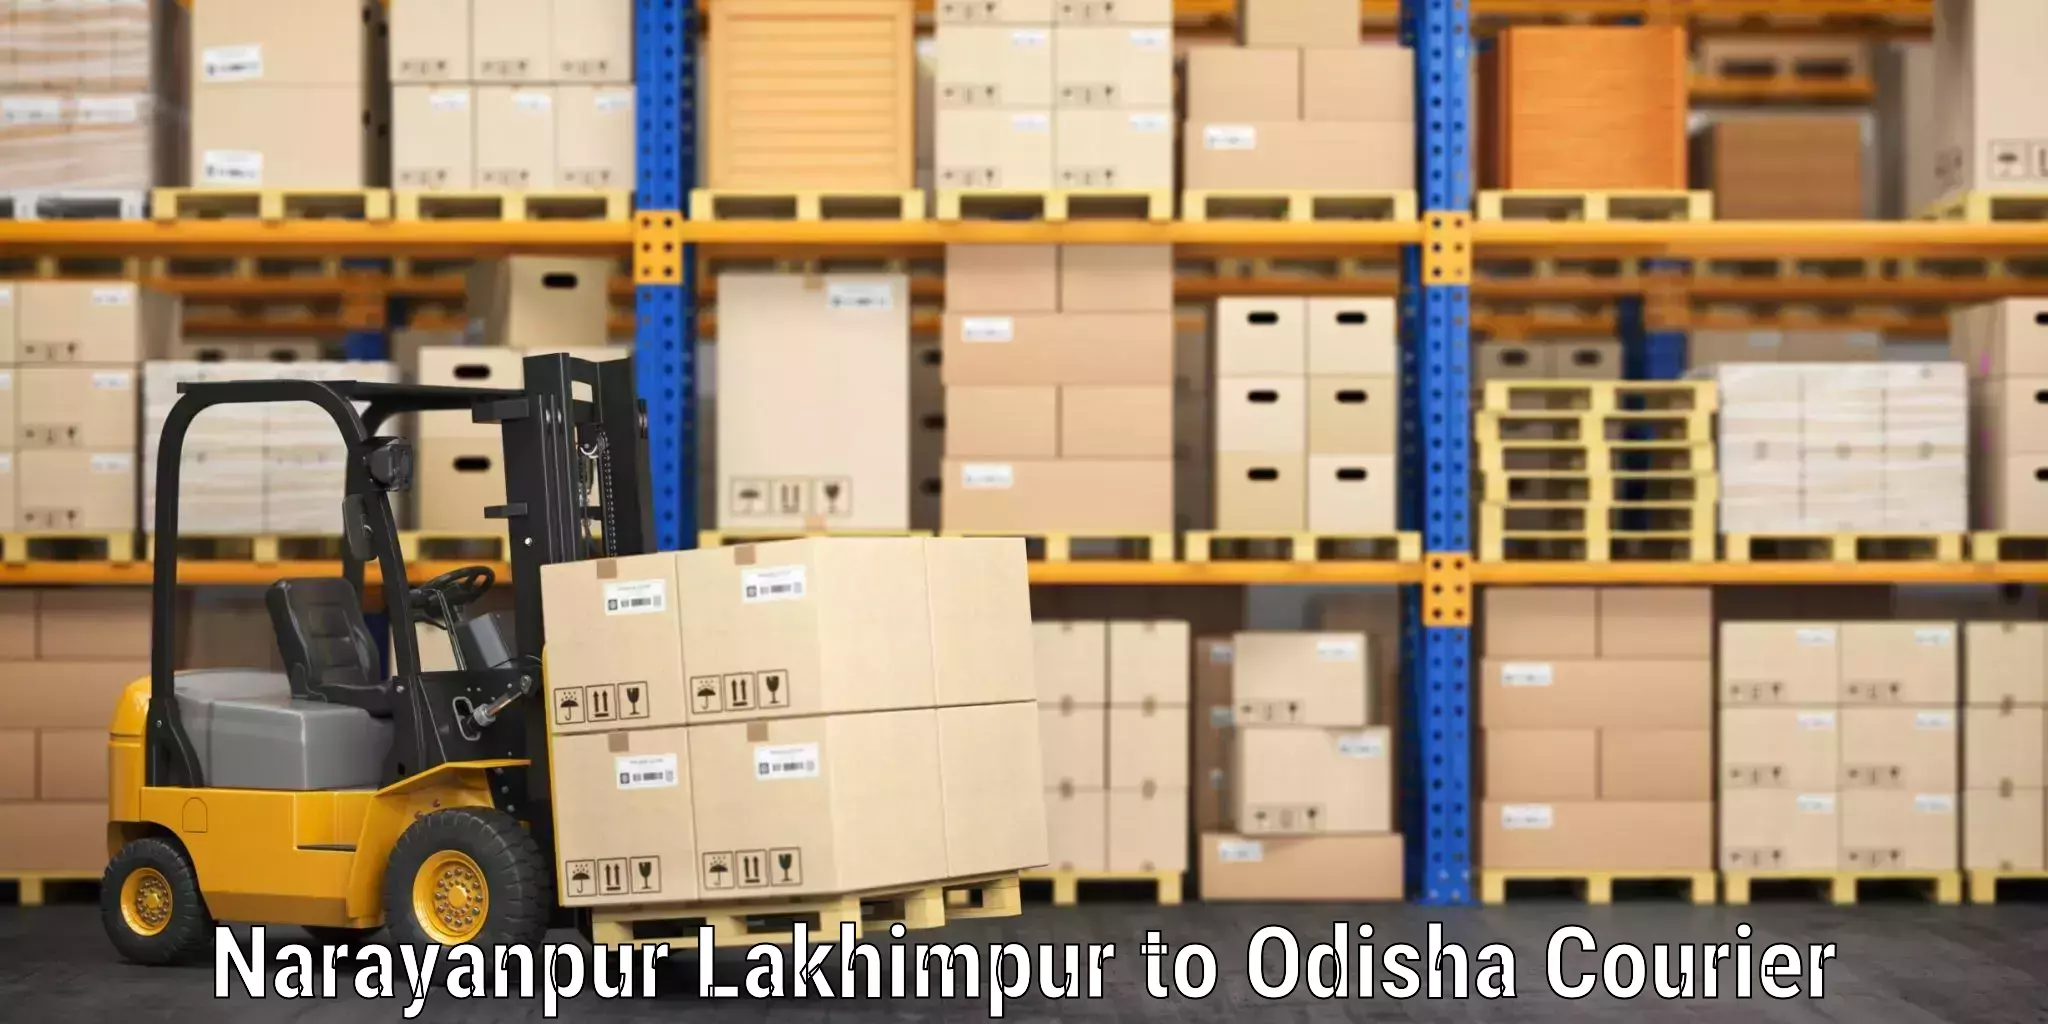 Luggage transport guidelines Narayanpur Lakhimpur to Tihidi